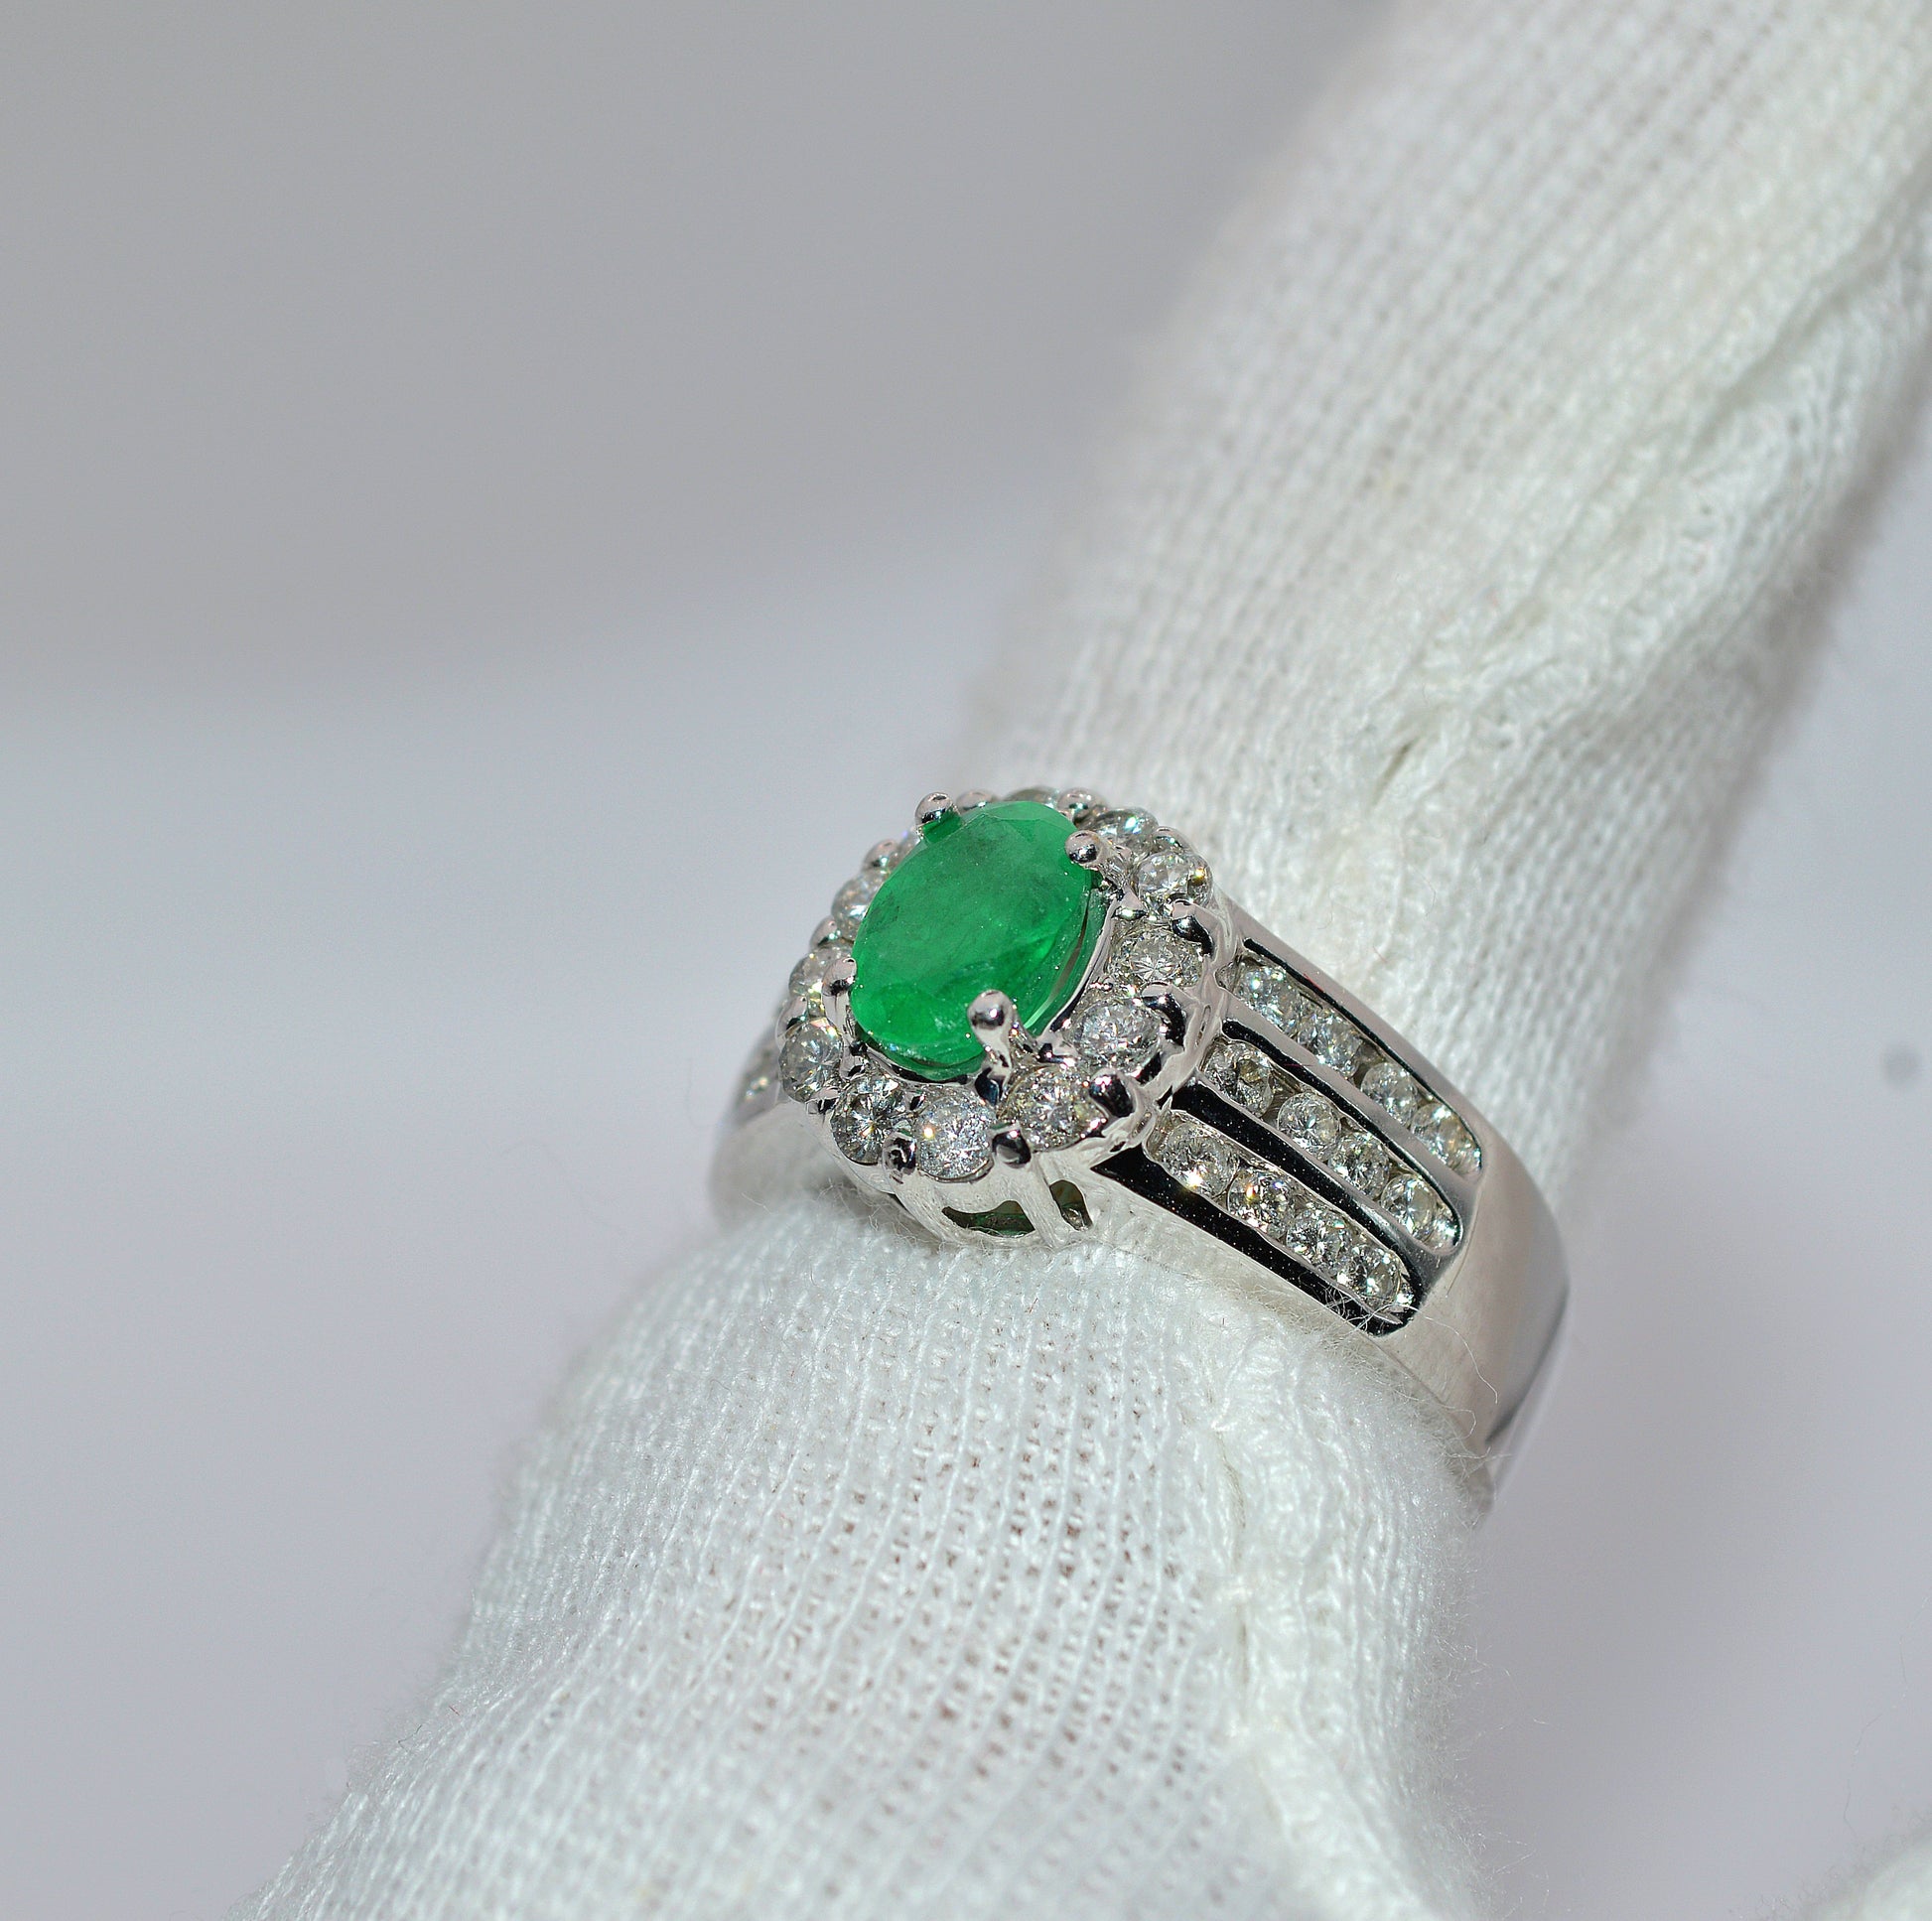 14ct Gold - Emerald & Diamond Statement Ring left tilt finger